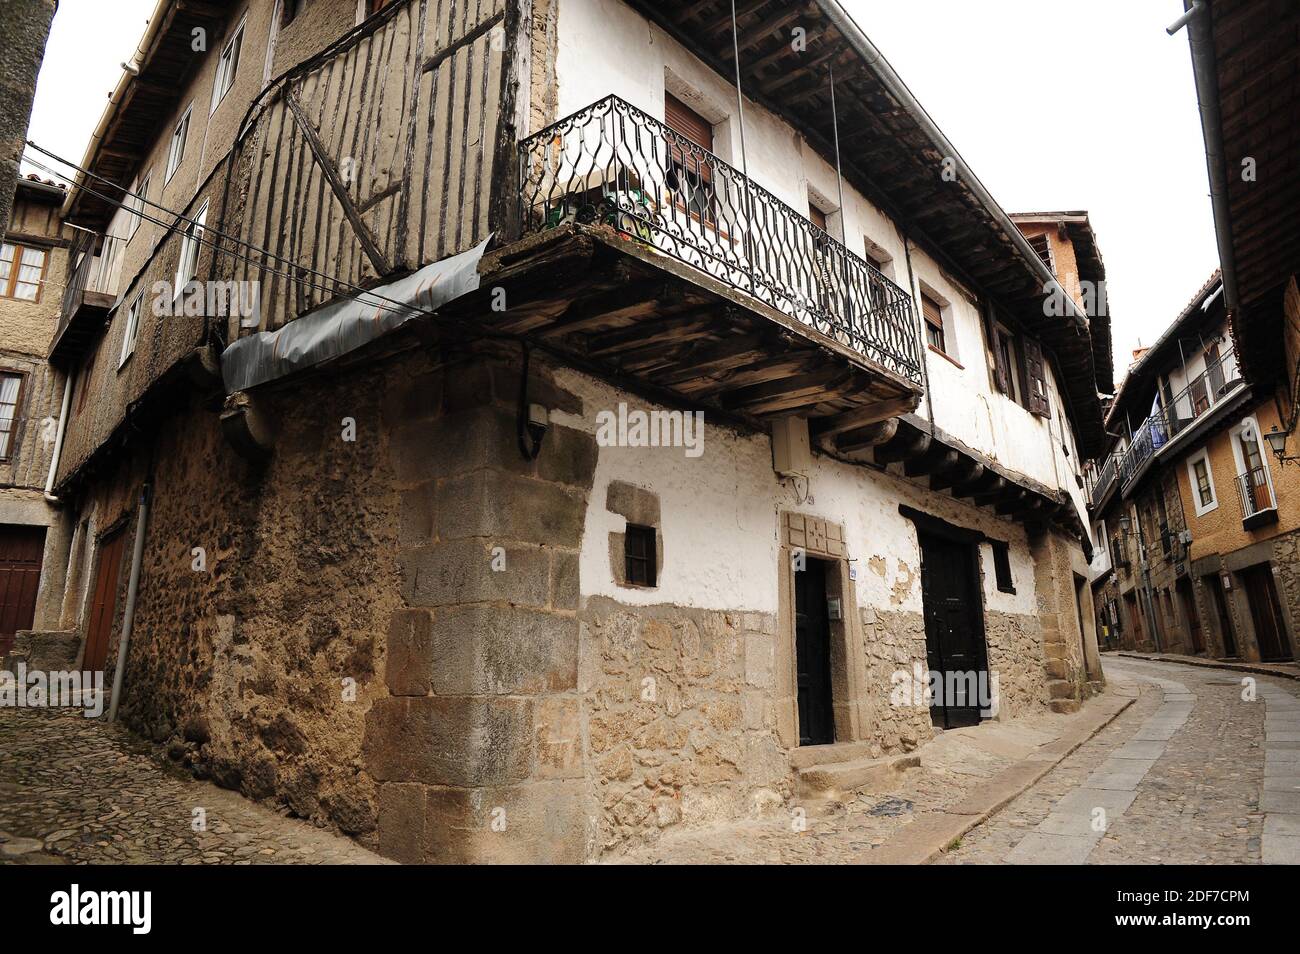 La Alberca (Conjunto Historico Artistico). Sierra de Francia, Salamanca province, Castilla y Leon, Spain. Stock Photo